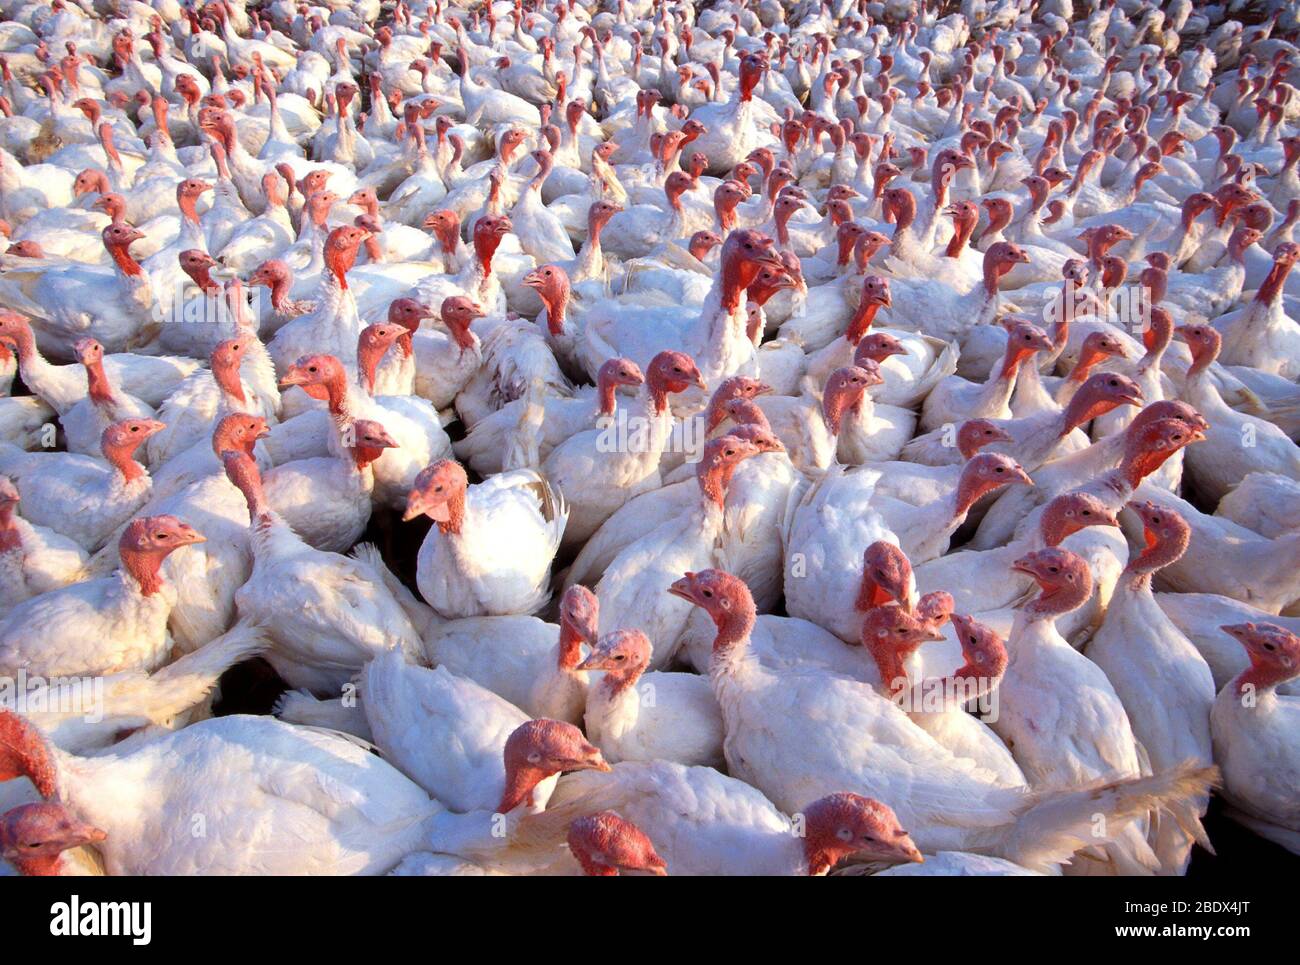 White turkeys Stock Photo